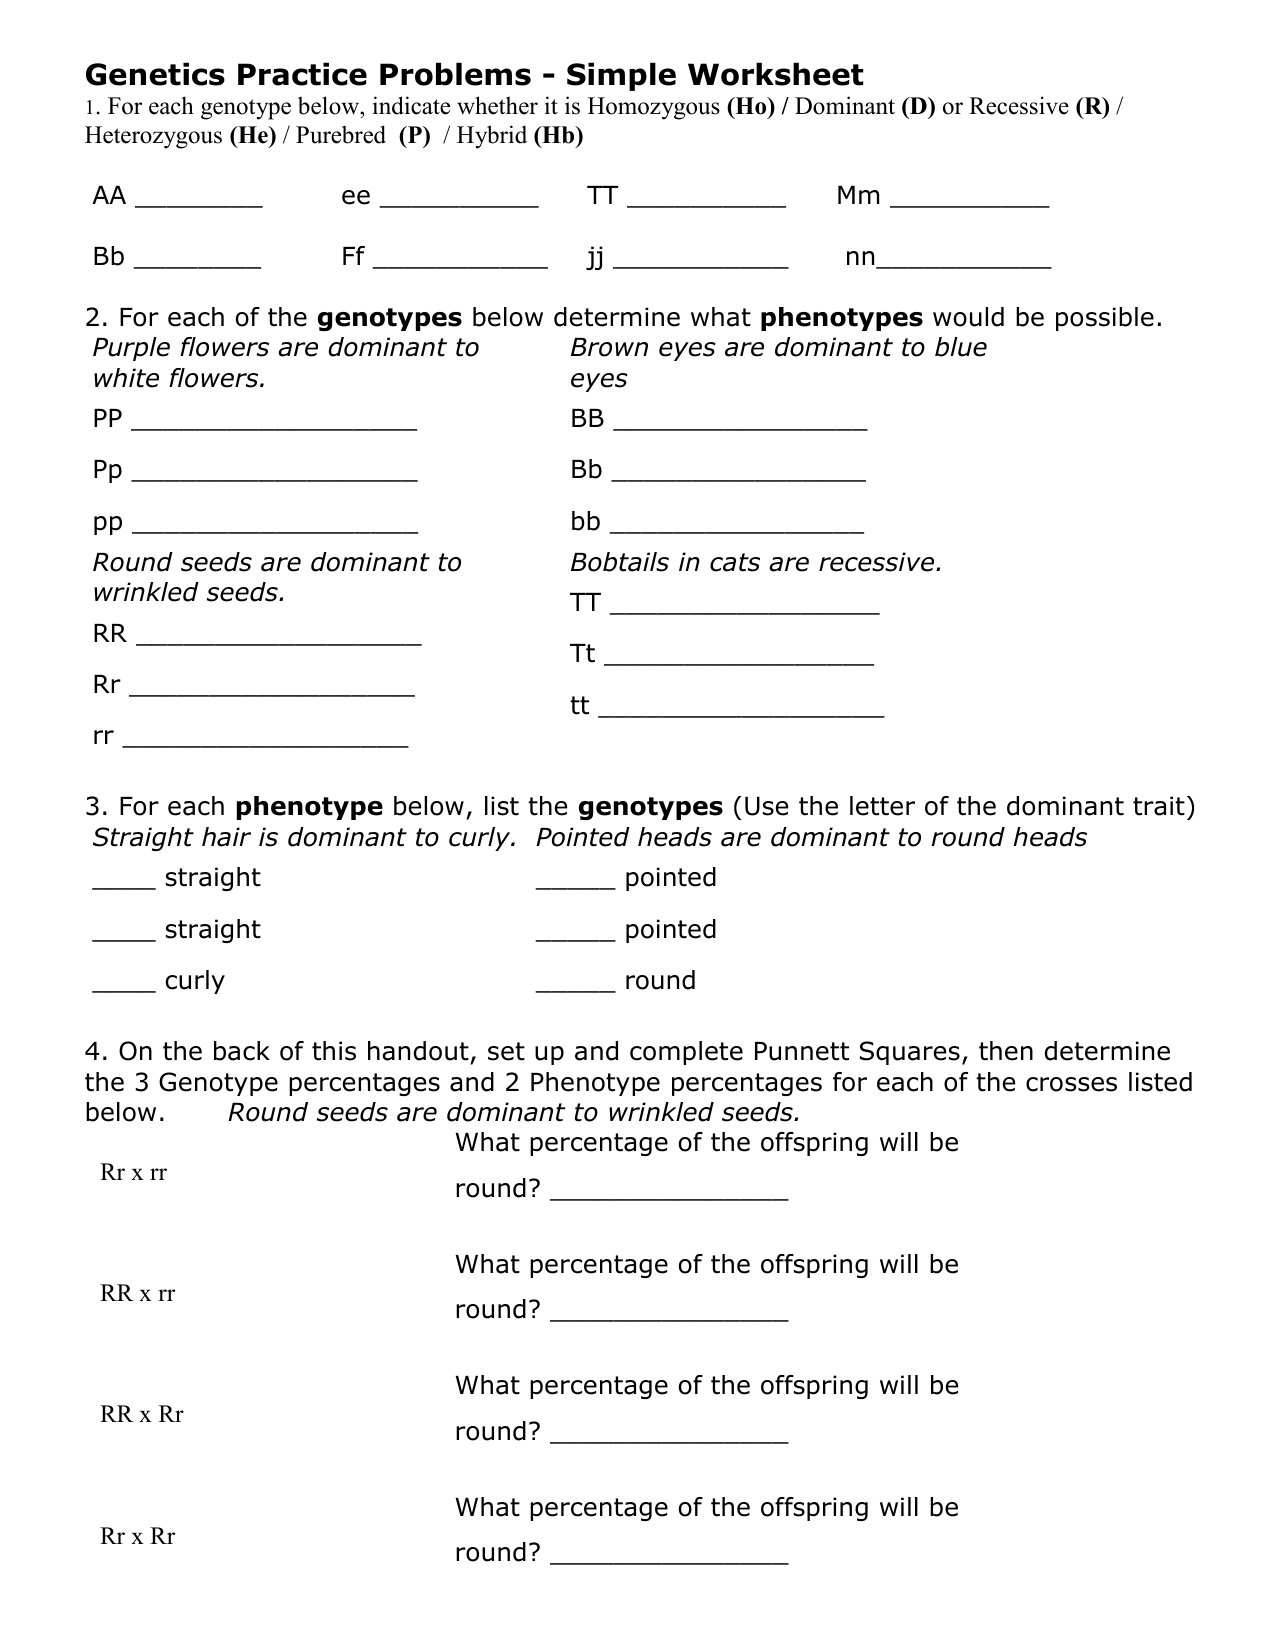 Genetics Practice Problems Simple Worksheet - Nidecmege With Regard To Genetics Practice Problems Simple Worksheet